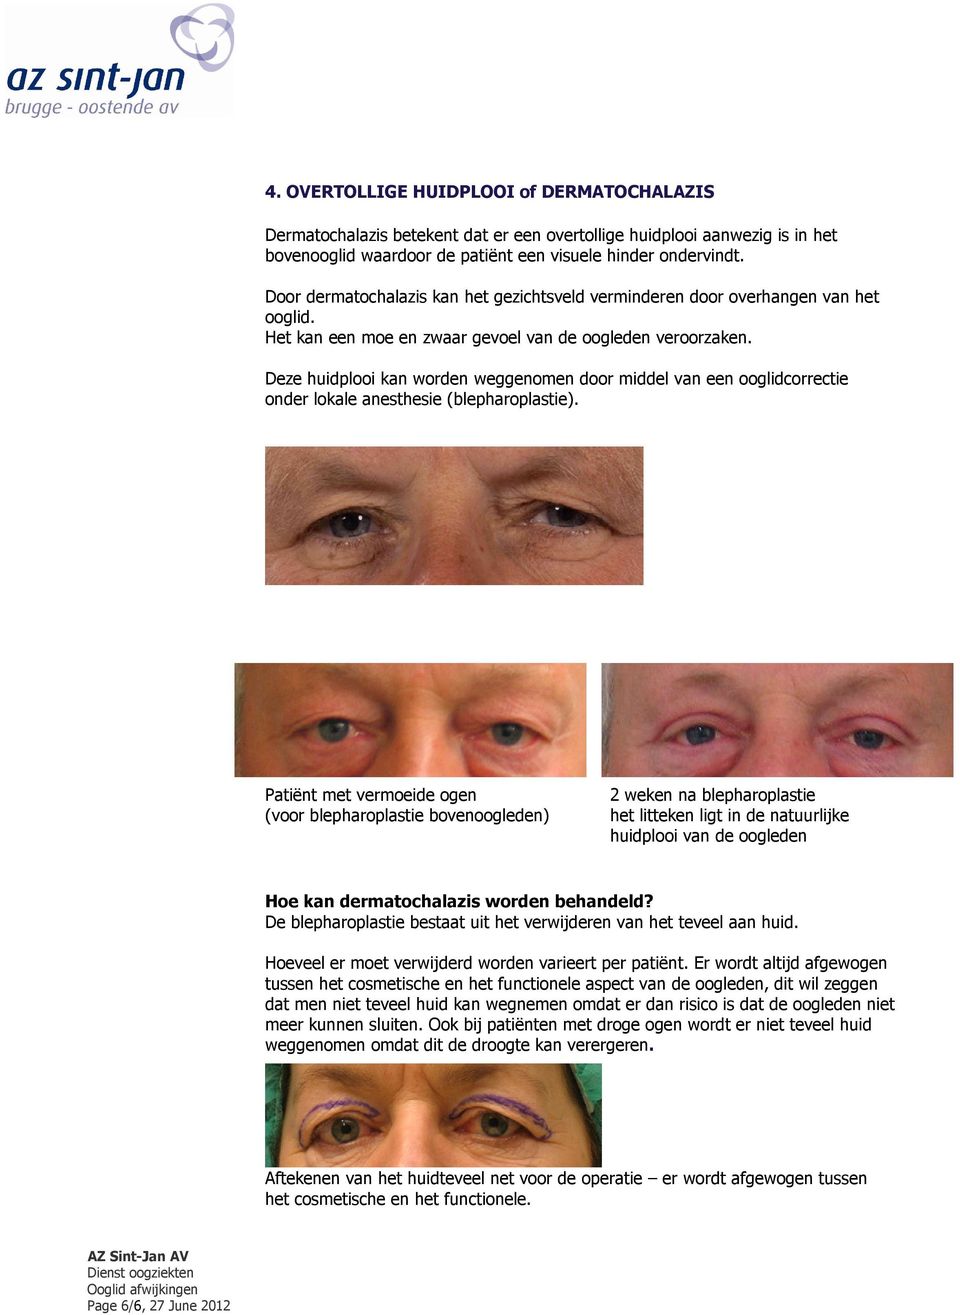 Deze huidplooi kan worden weggenomen door middel van een ooglidcorrectie onder lokale anesthesie (blepharoplastie).